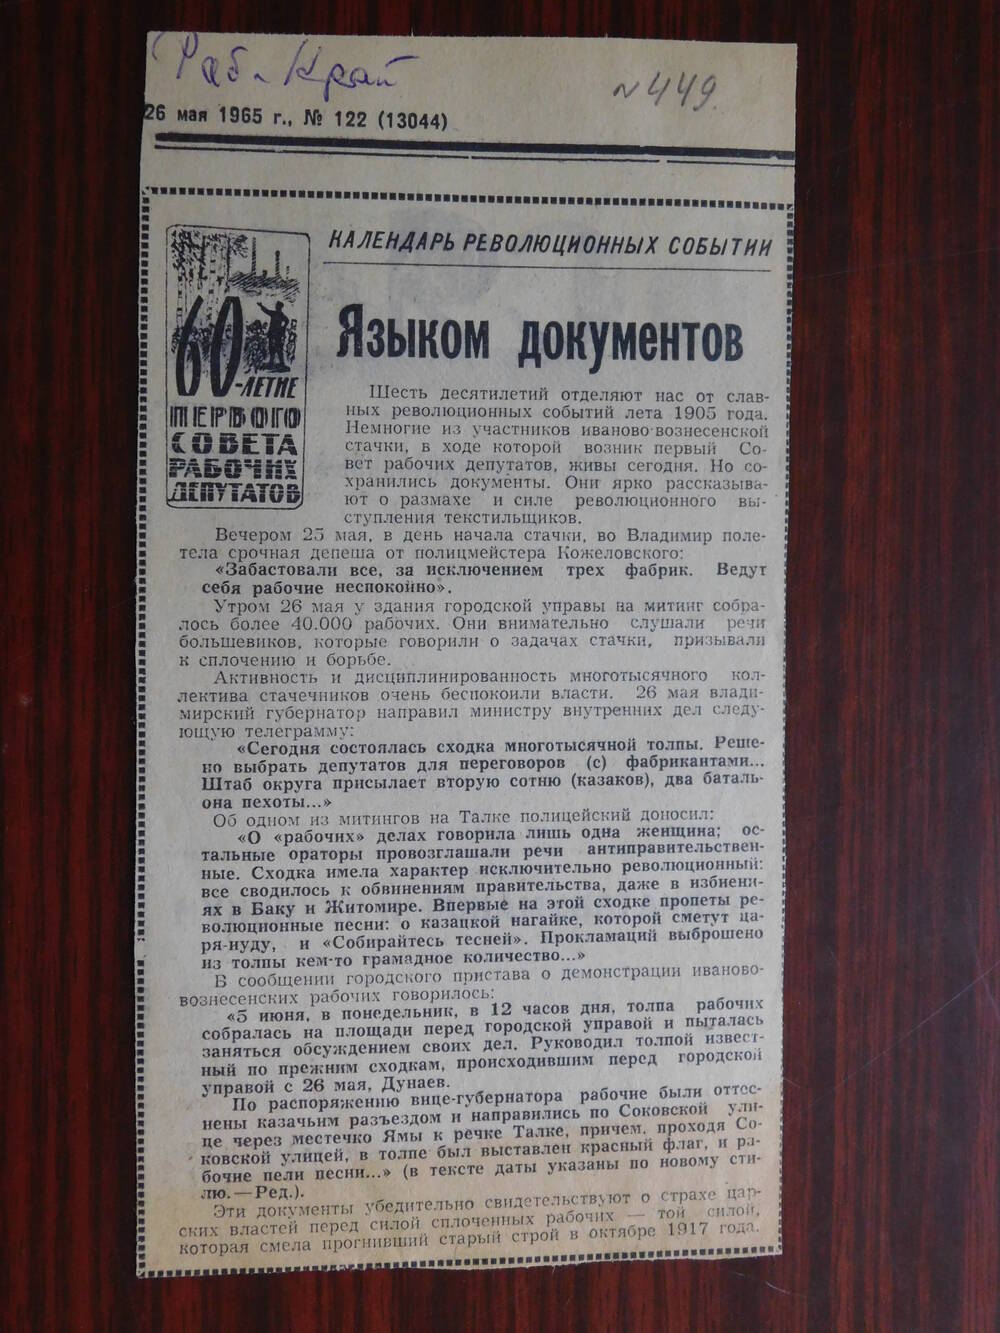 Фрагмент газеты Рабочий край № 122 (13044) от 26.05.1965 г. Языком документов. Иваново.